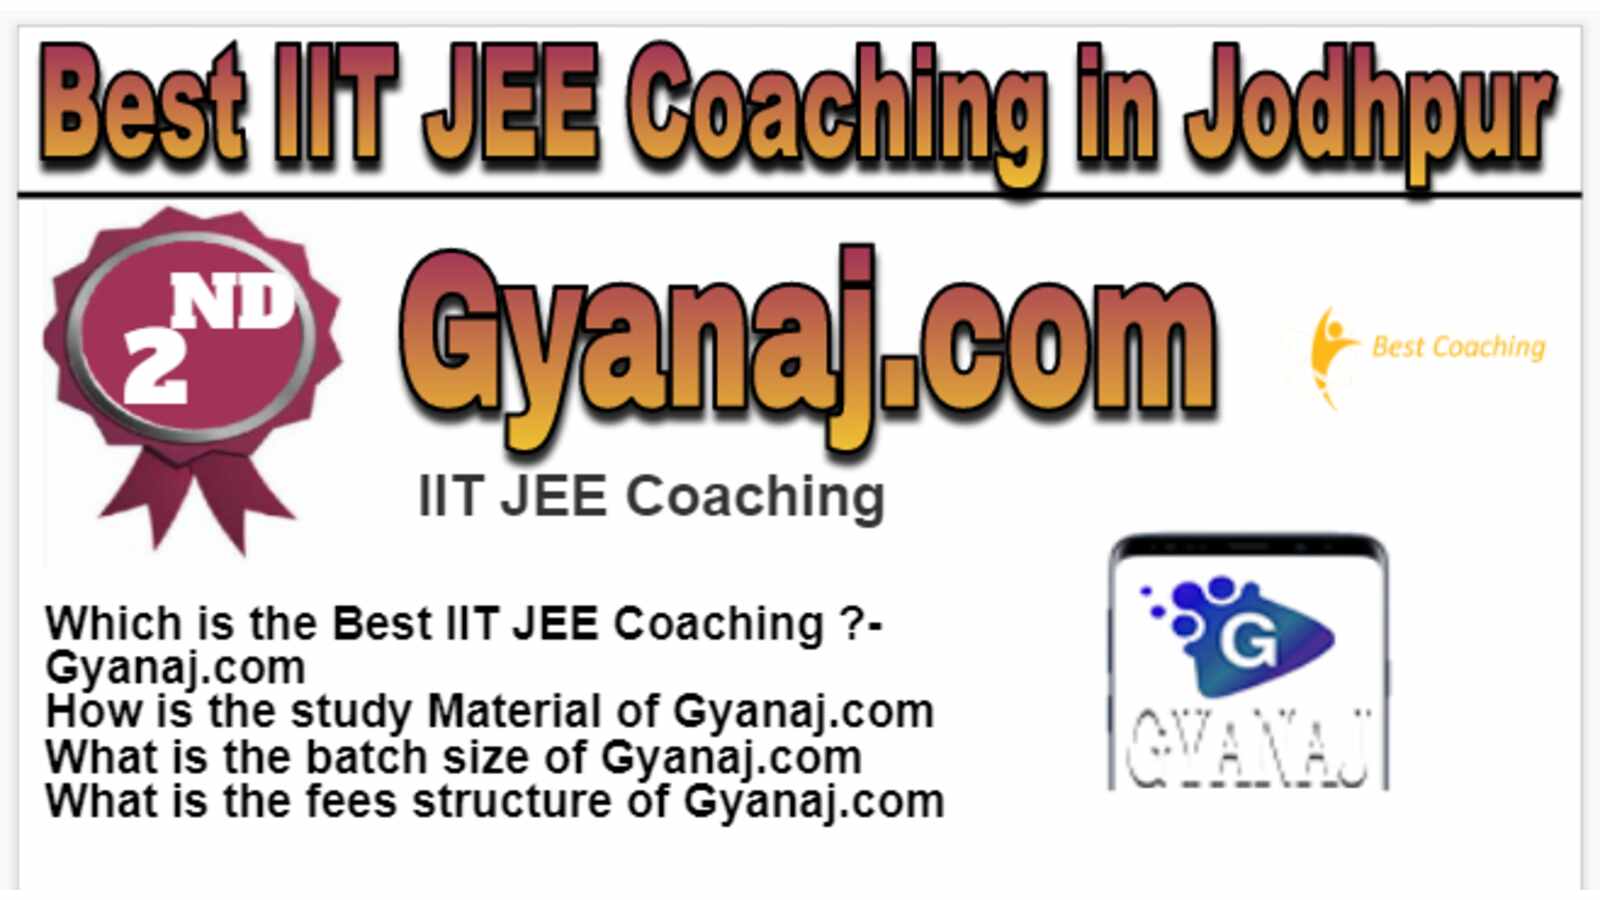 Rank 2 Best IIT JEE Coaching in Jodhpur